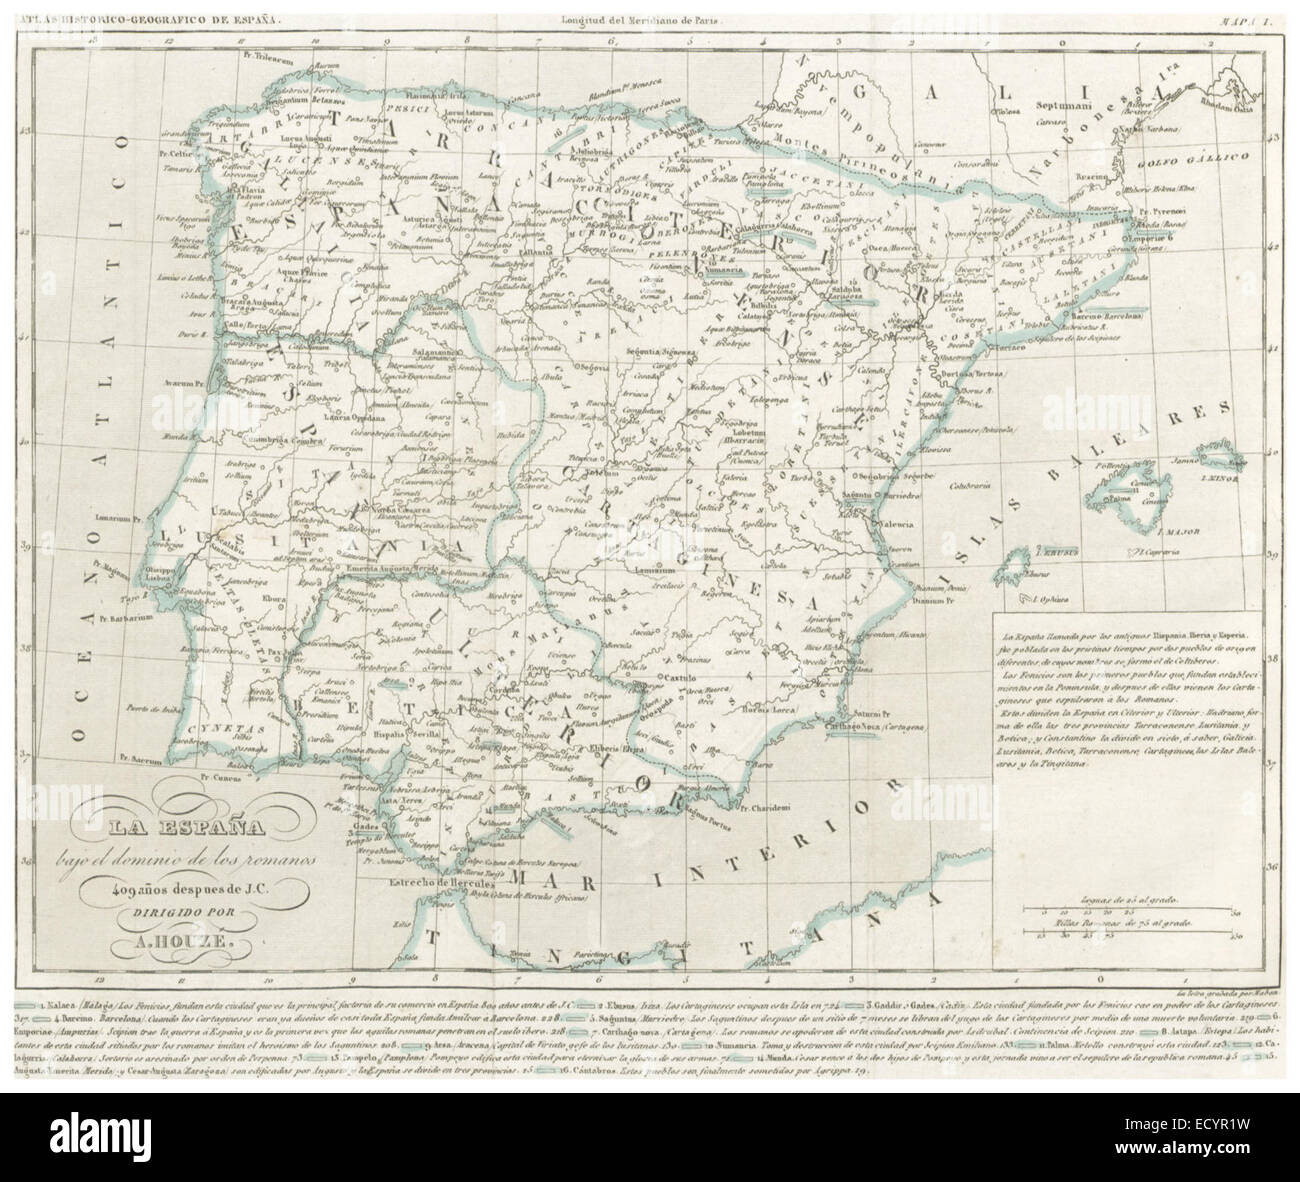 CHAO(1849) Atlas Historico Geografico de España - Mapa 1 (409) Stock Photo